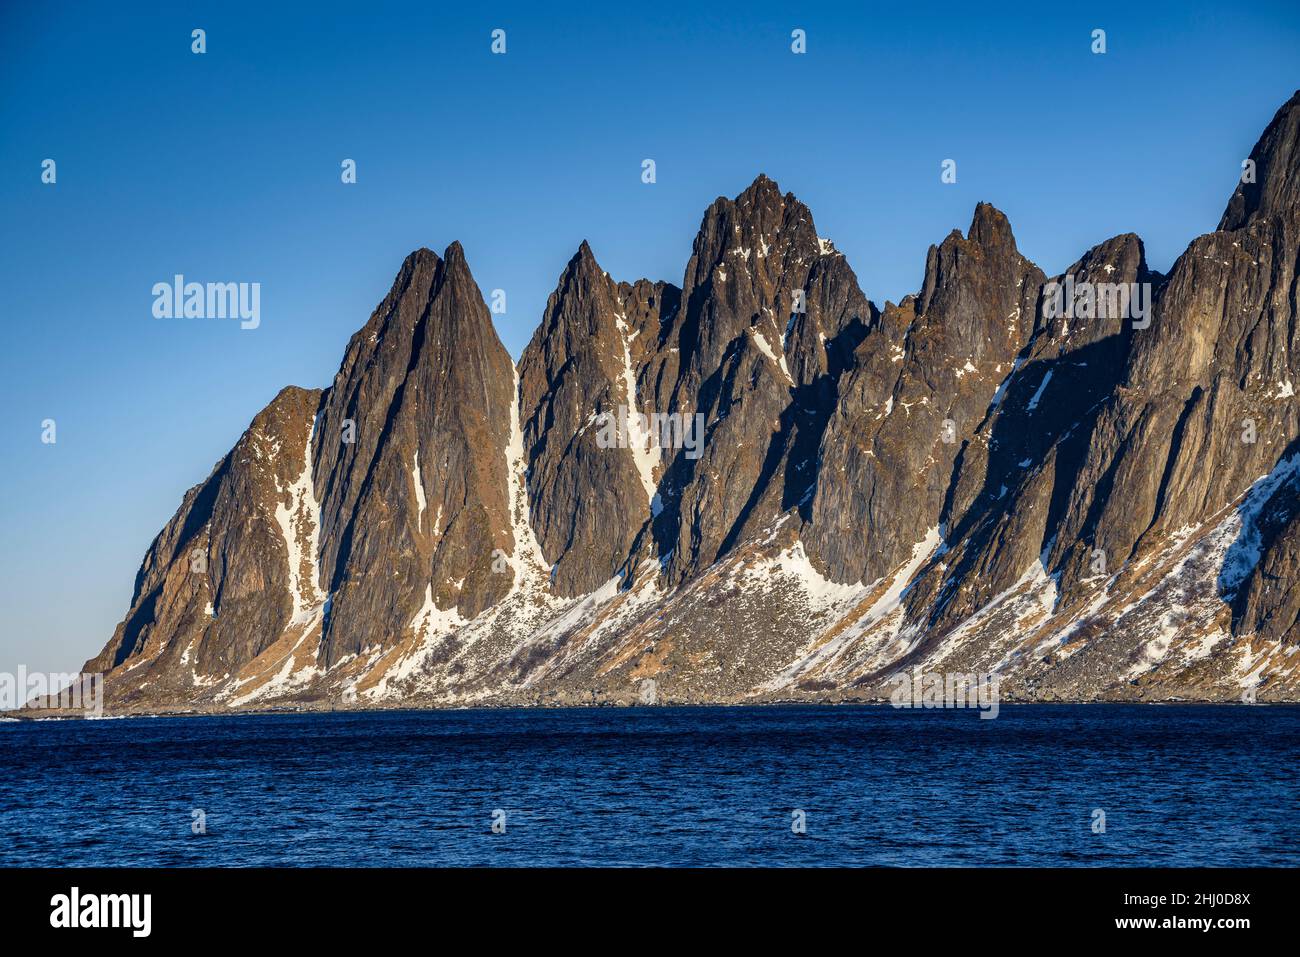 Oksen Mountain (noto anche come "i denti del male"), in una fredda mattinata di sole invernale (Senja, Norvegia) ESP: Montaña de Oksen en invierno (Senja, Noruega) Foto Stock